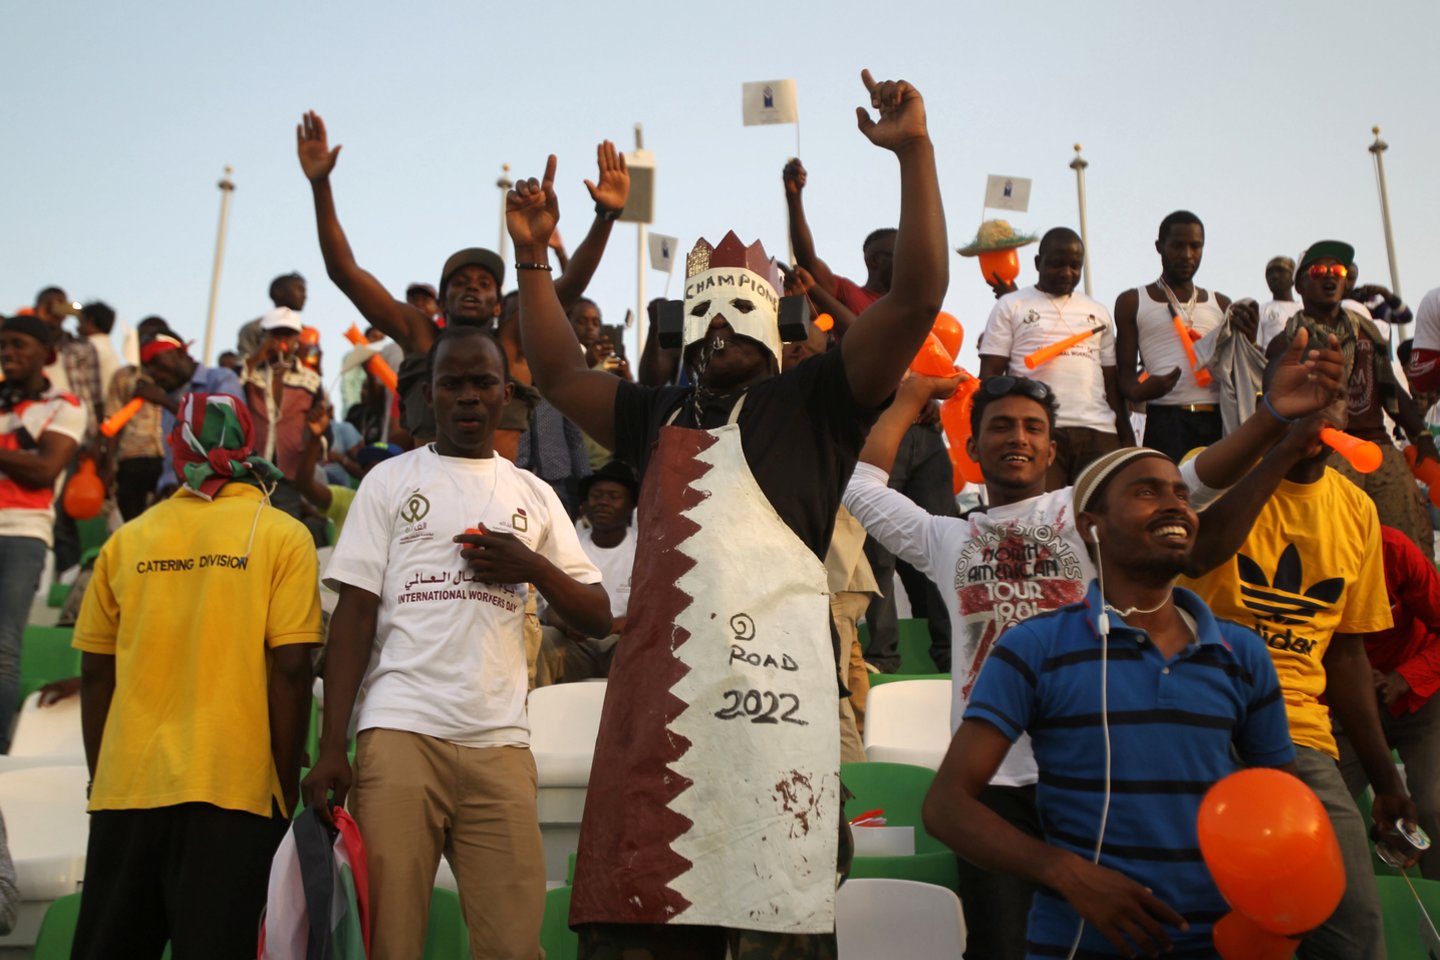  Kataras kaltinimas migrantų žūtimis statant stadionus pasaulio futbolo čempionatui.<br> Reuters/Scanpix nuotr.